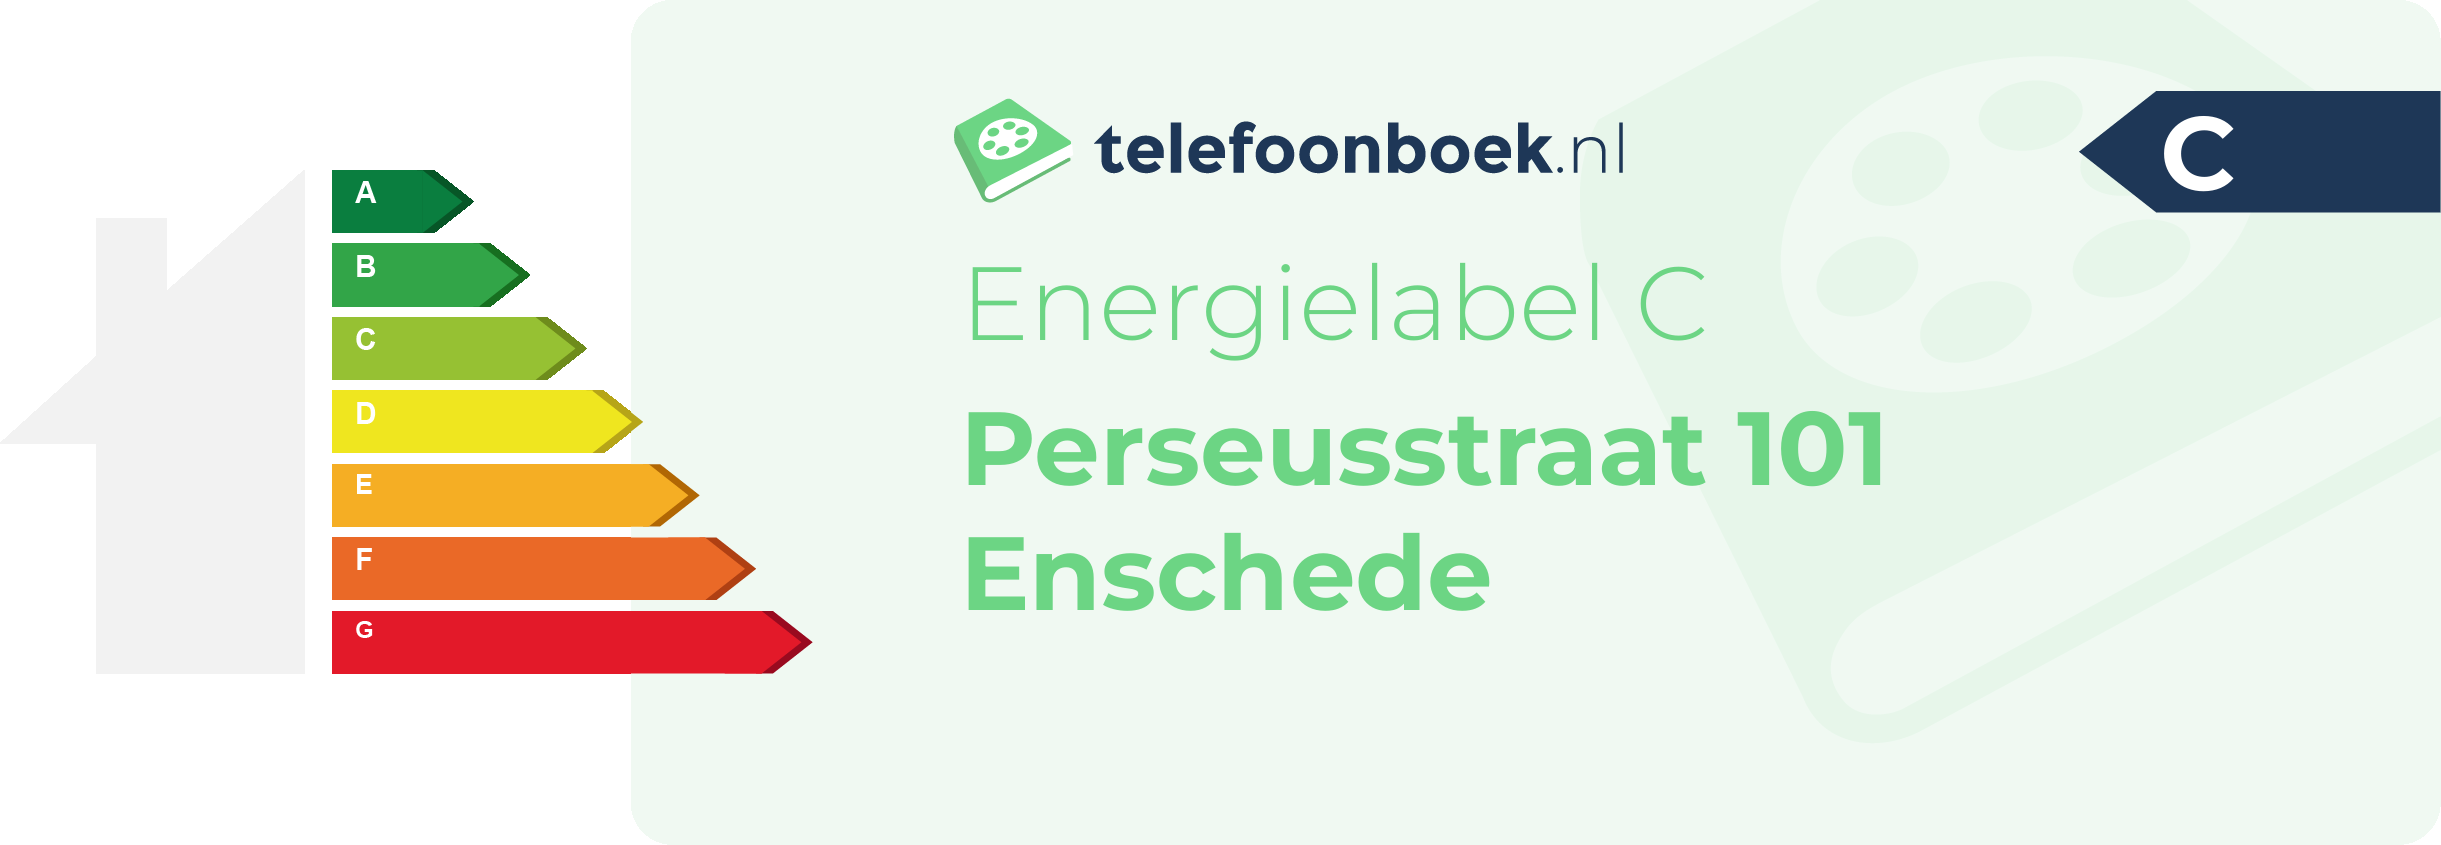 Energielabel Perseusstraat 101 Enschede